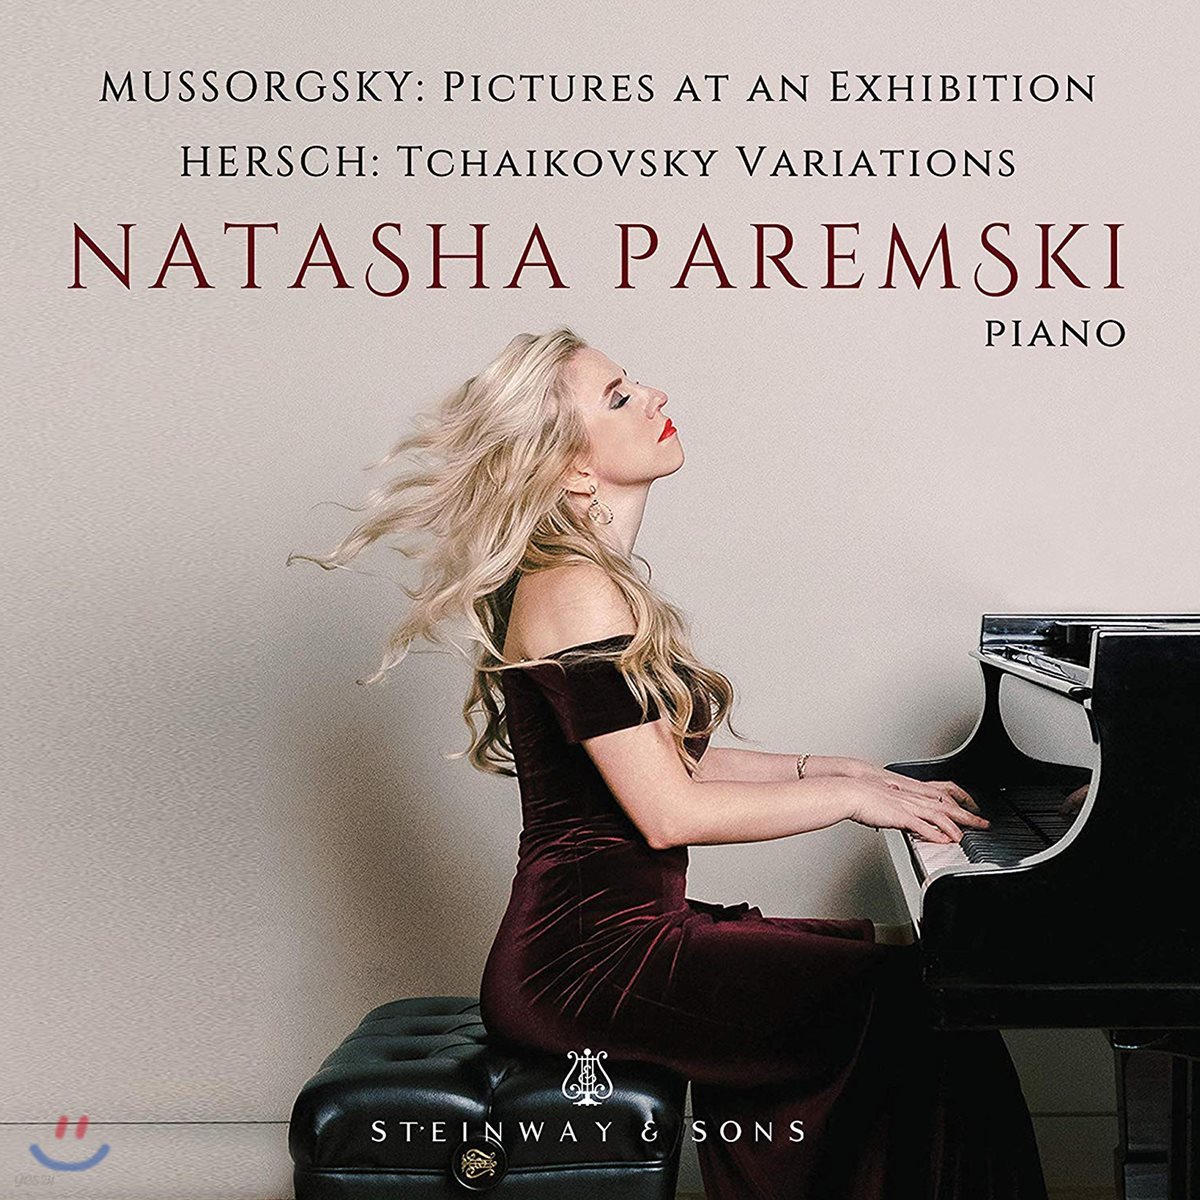 Natasha Paremski 무소르그스키: 전람회의 그림 [피아노 연주반] / 프레드 허쉬: 차이코프스키 변주곡